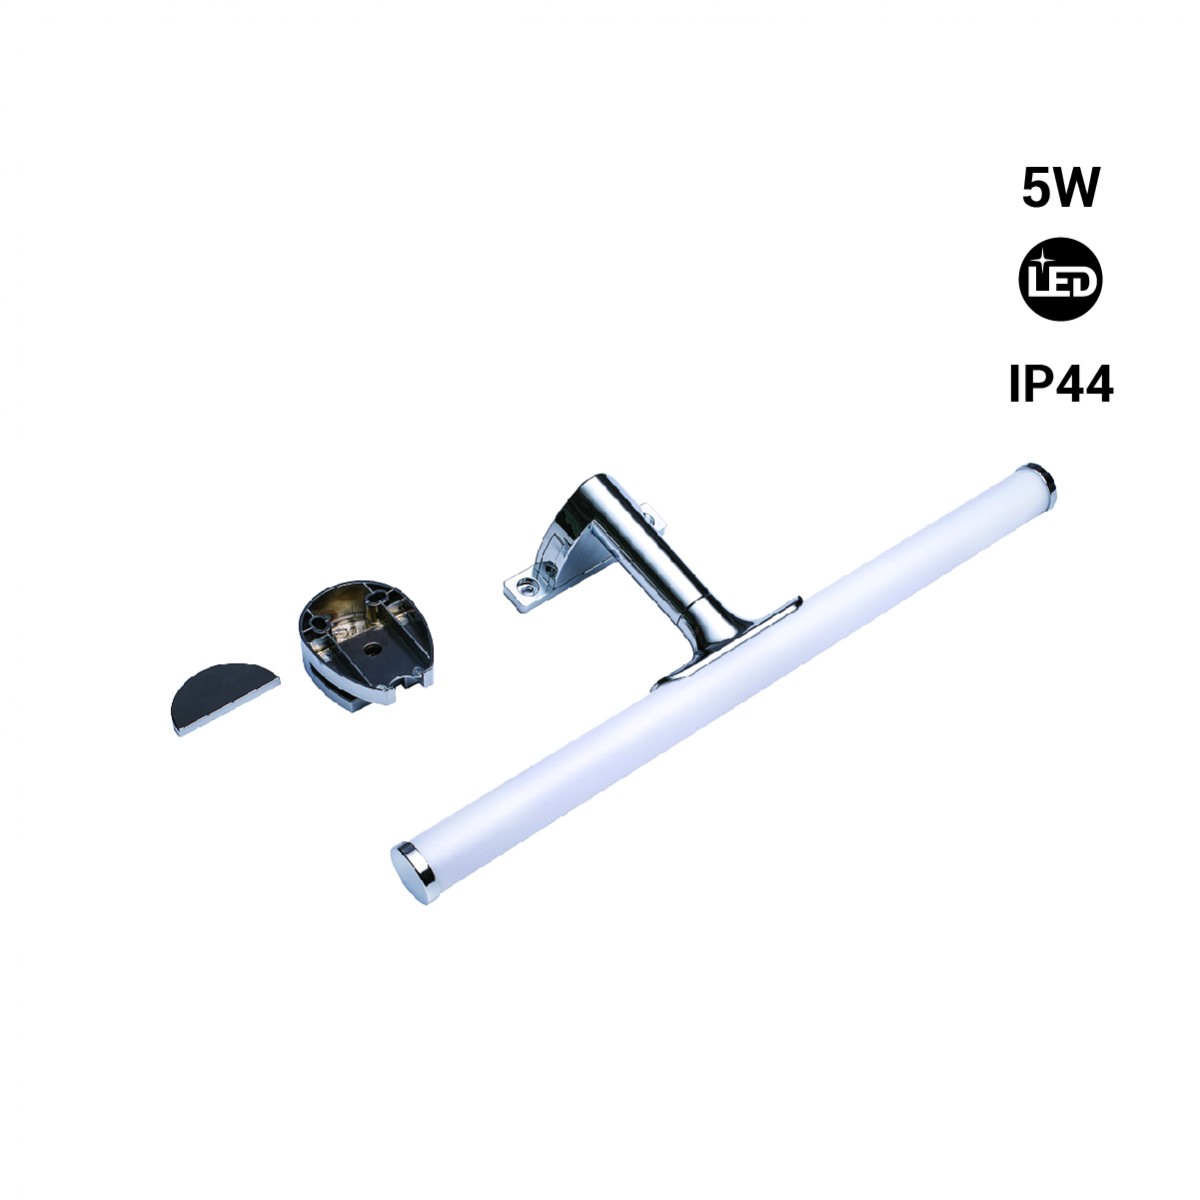 Aplique de espejo LED, aplique de baño 40cm 1200LM 7W IP44, luz blanca  6000K, iluminación de espejo, muebles, aplique de pared ACTIVE Biensenido a  ACTIVE